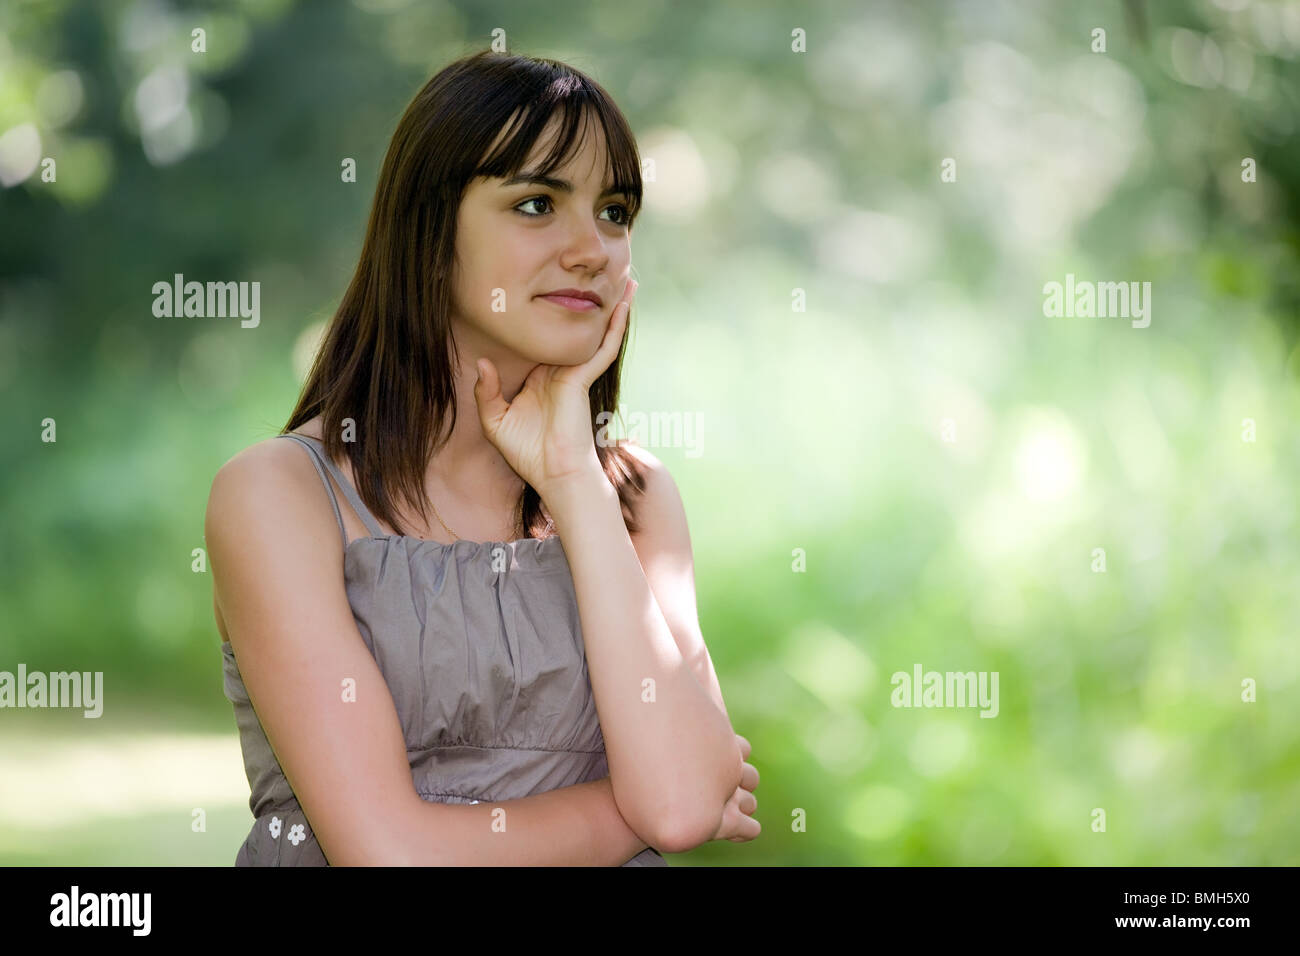 outdoor pensive teen girl portrait in nature Stock Photo